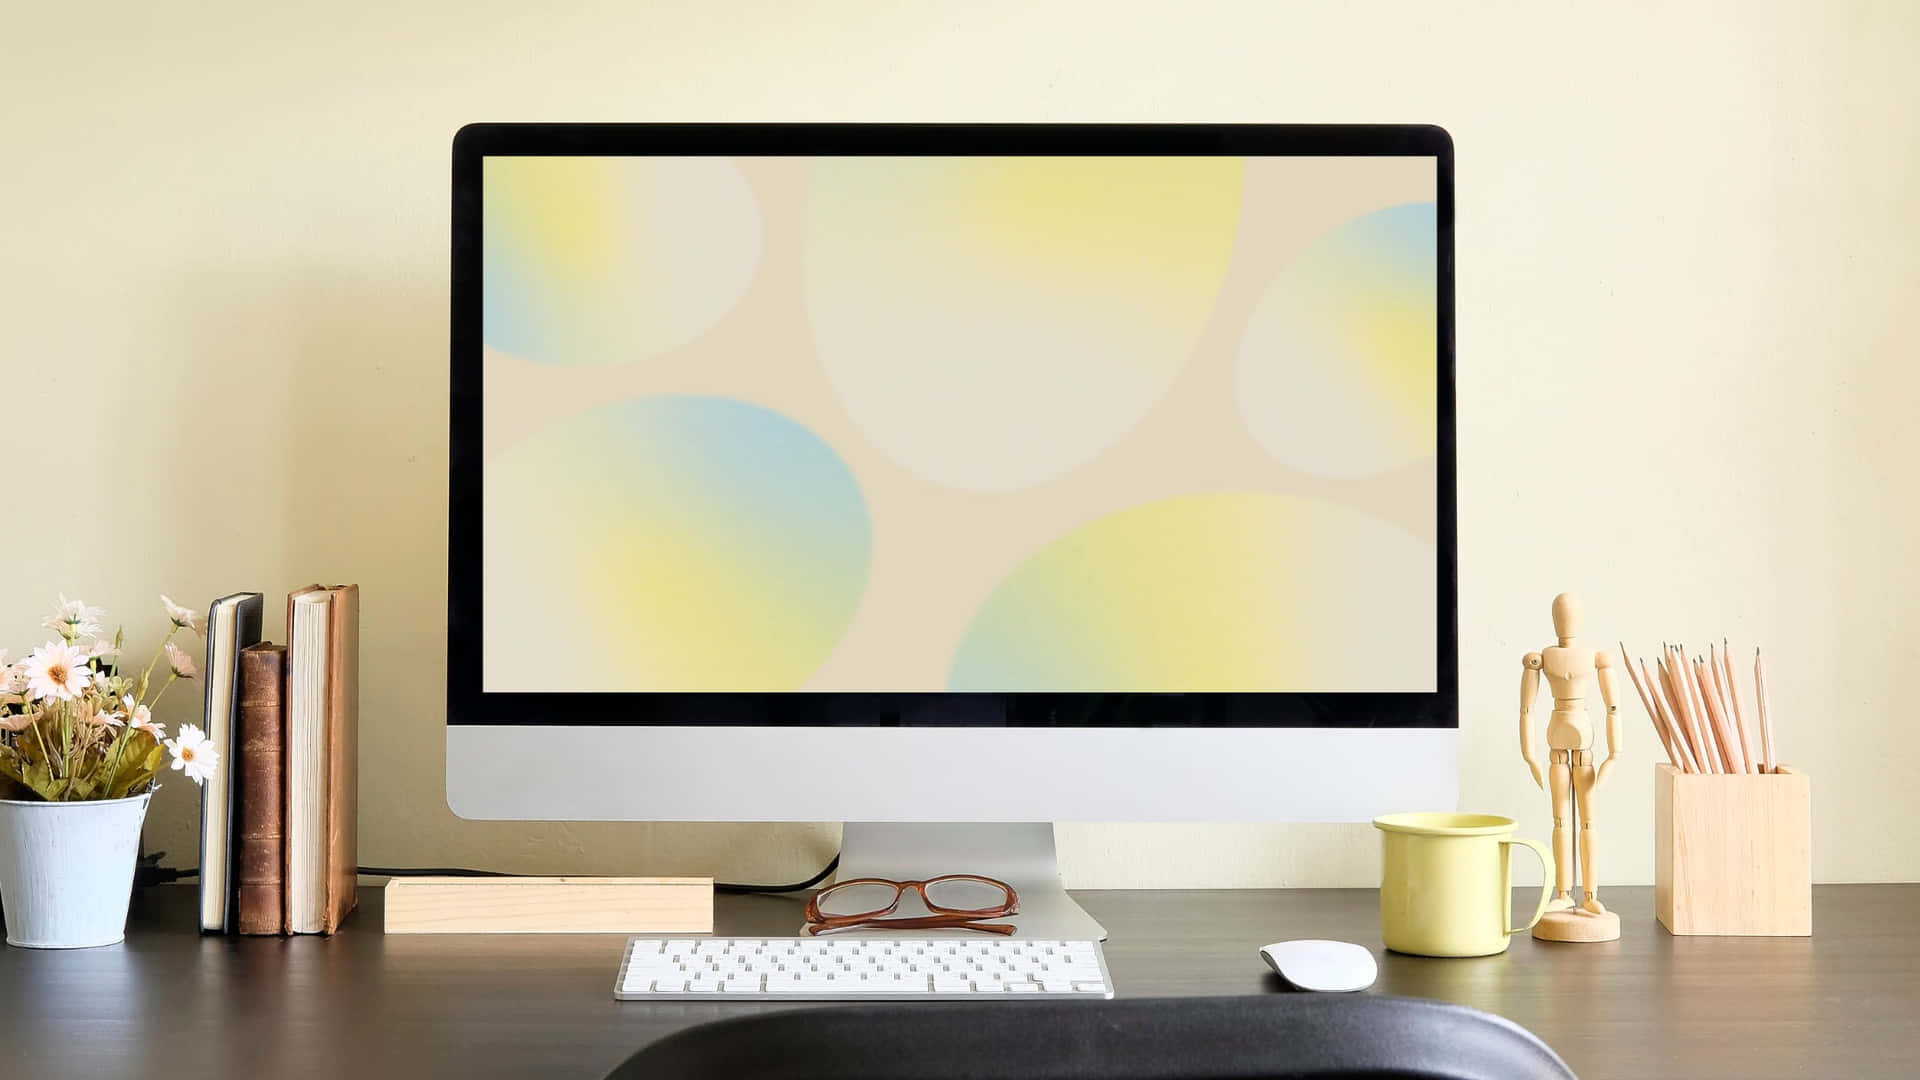 Eincomputerbildschirm Auf Einem Schreibtisch Mit Gelbem Hintergrund.